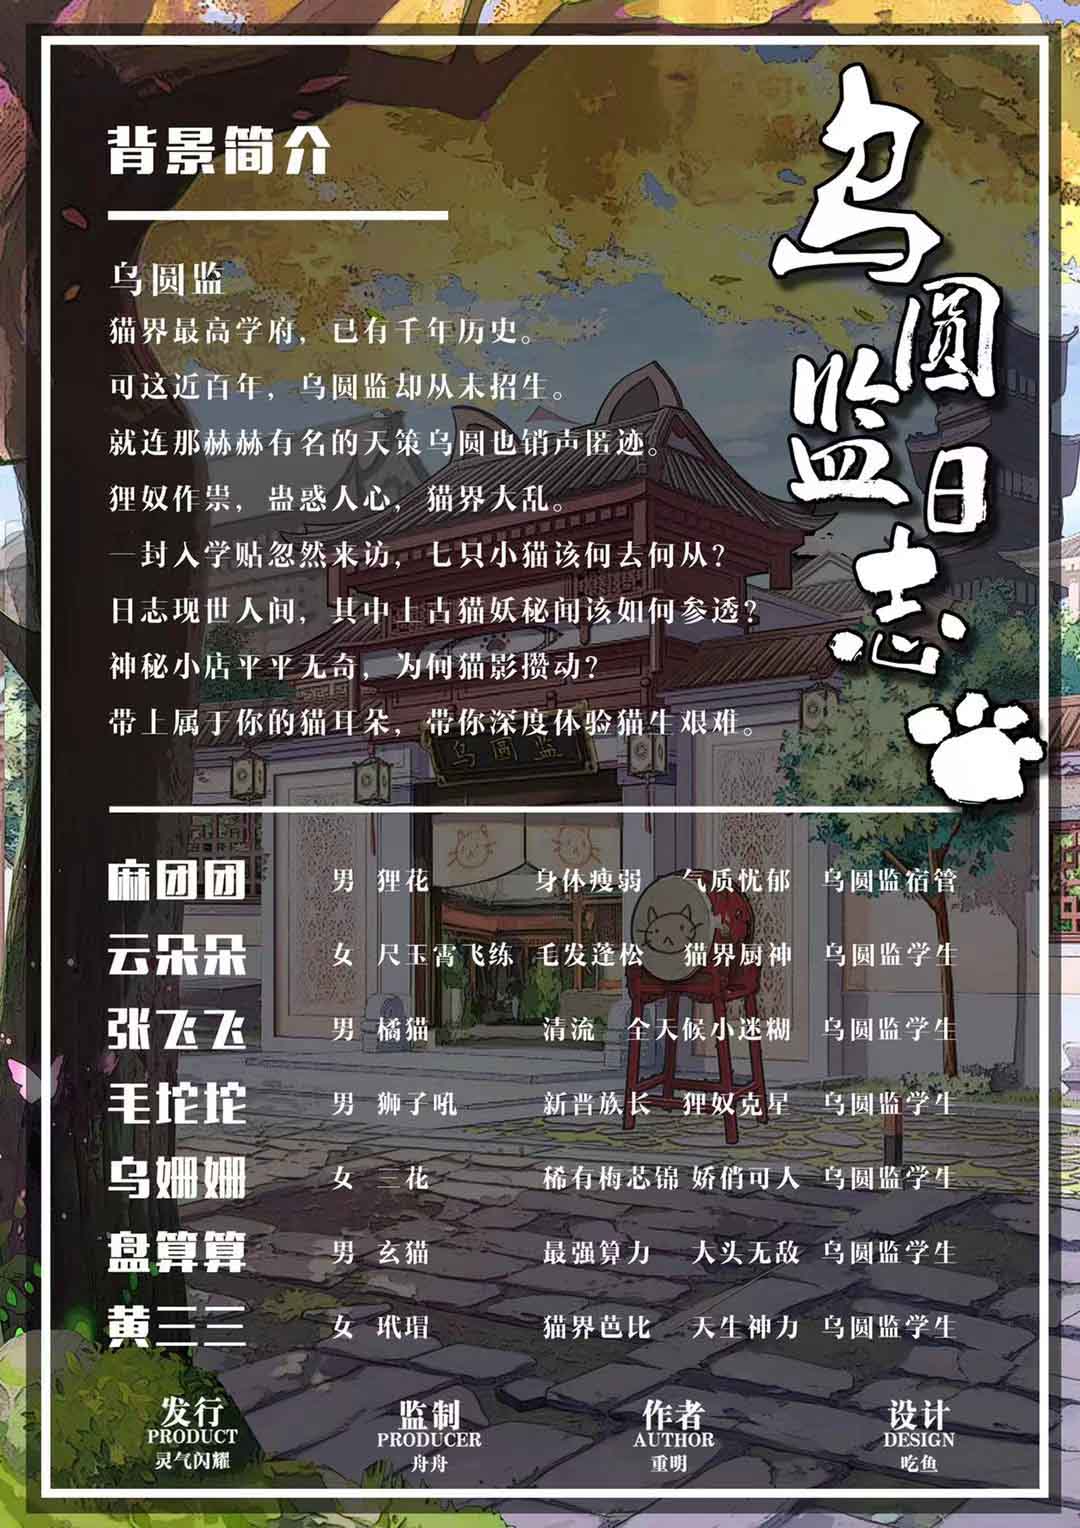 『乌圆监日志』海报2